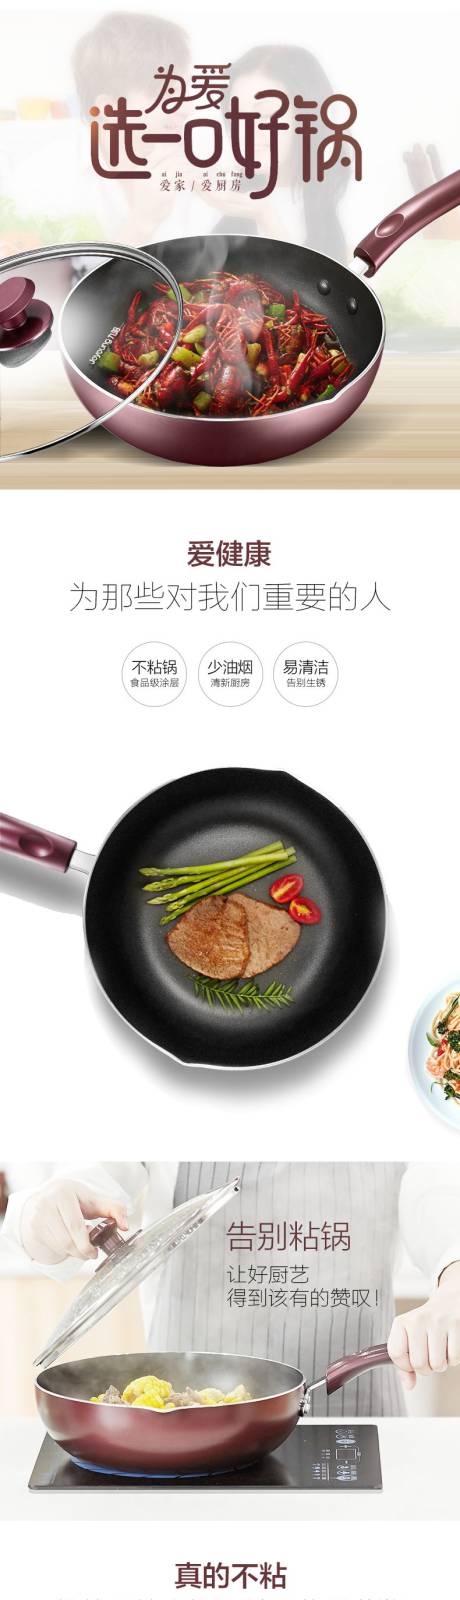 铁锅餐具厨房用具淘宝详情页